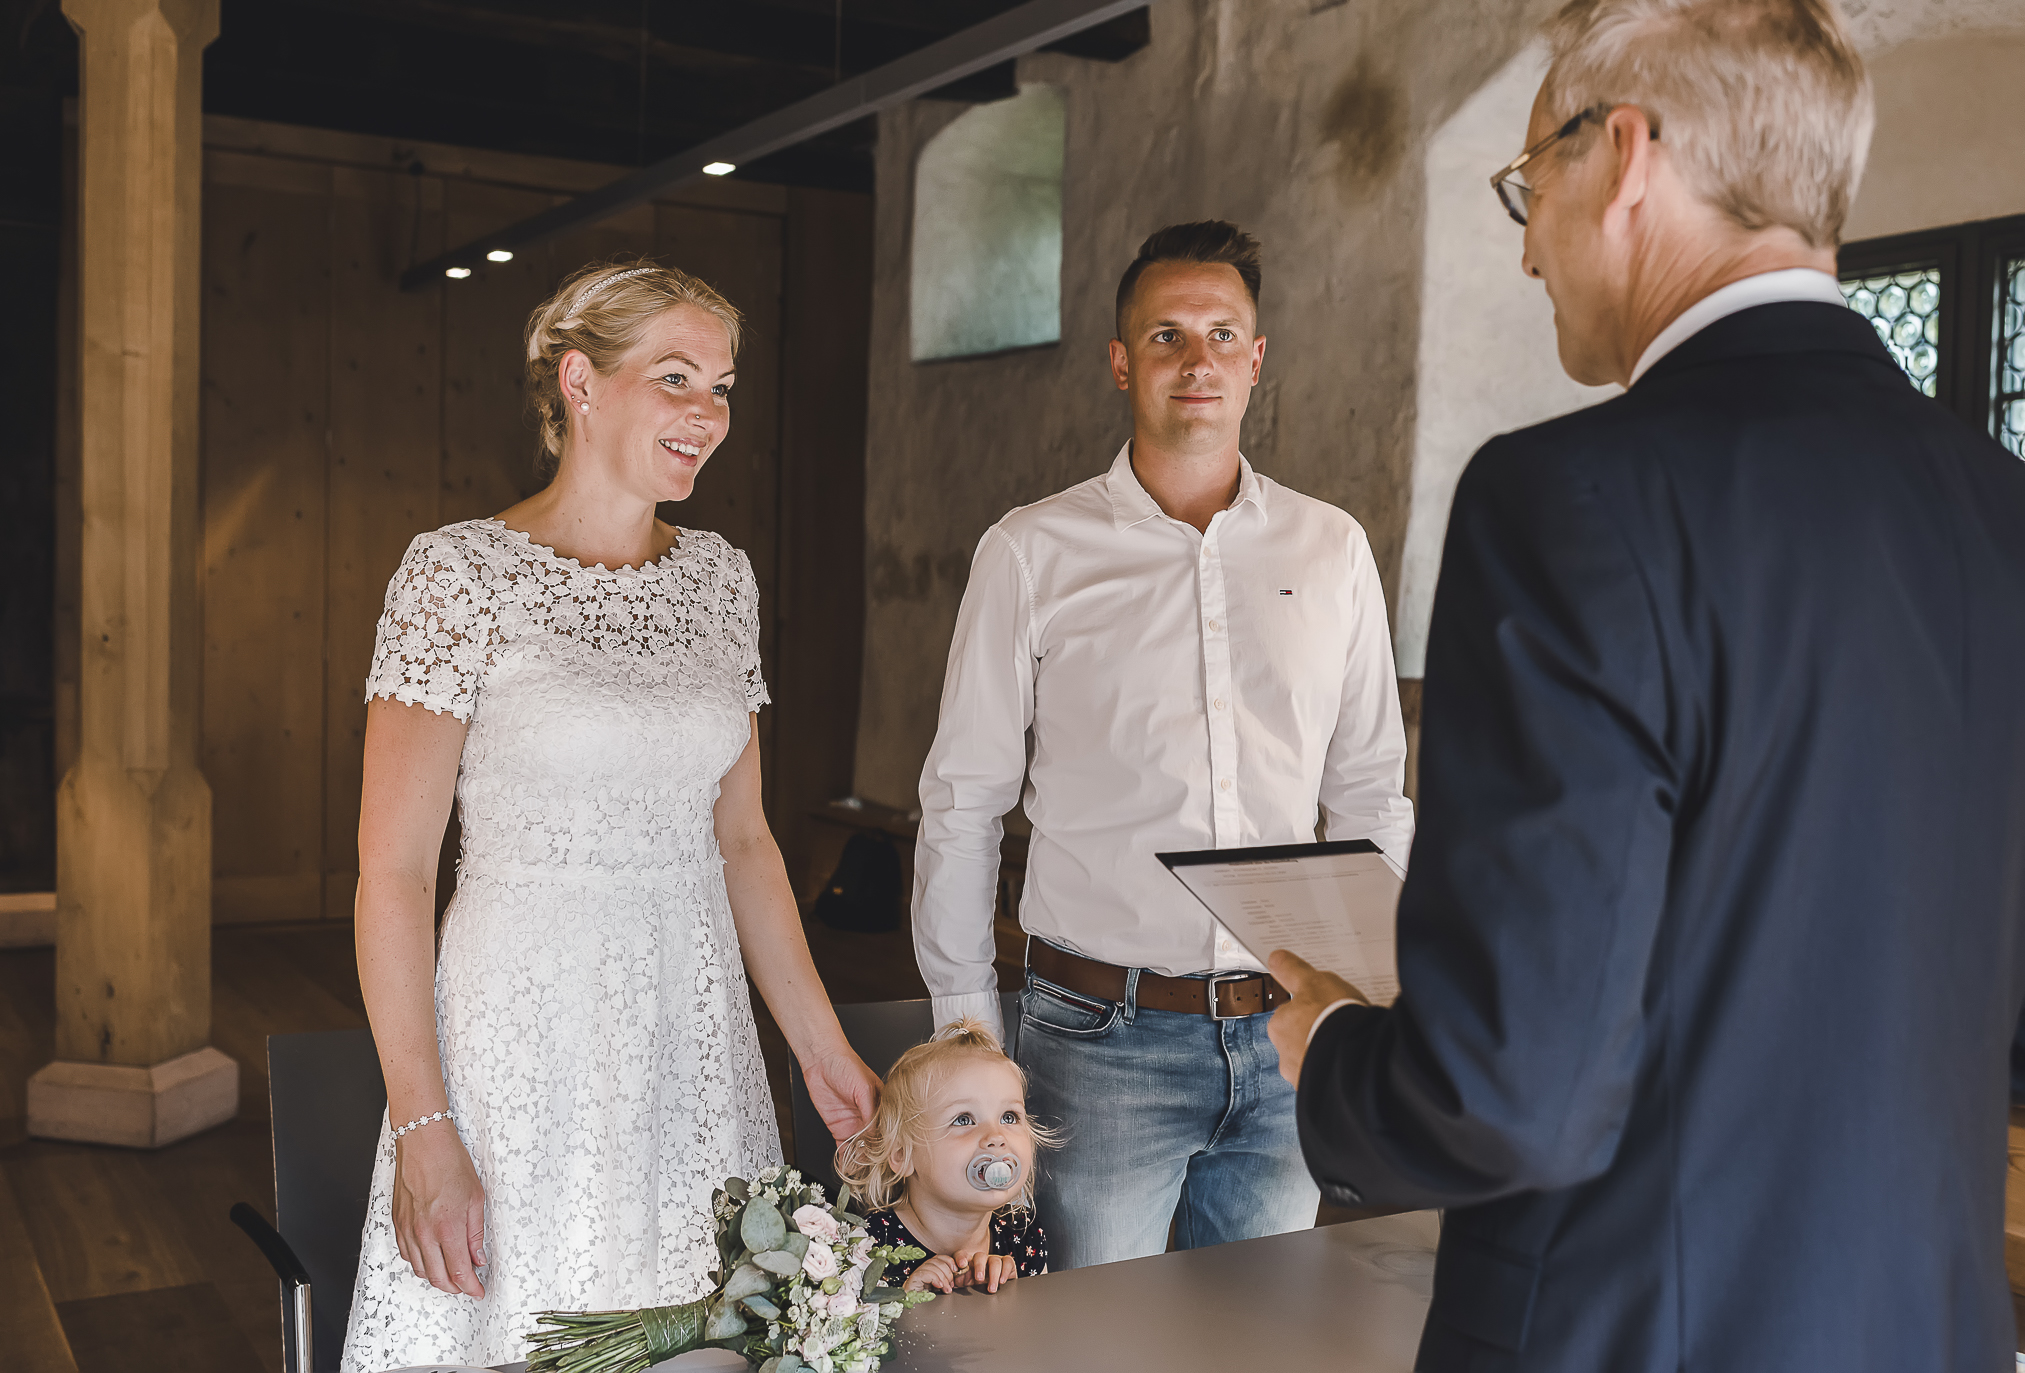 Das frisch verheiratete Brautpaar gibt sich in Kirchzarten das "Ja"-Wort. Inmitten des Standesamts sitzen sie eng umschlungen und strahlen vor Glück. Der Beamte stellt ihnen die Fragen und die kleine Tochter schaut neugierig in die Mitte. Ein magischer Moment, den die talentierte Hochzeitsfotografin Isabela Campos für immer festgehalten hat.